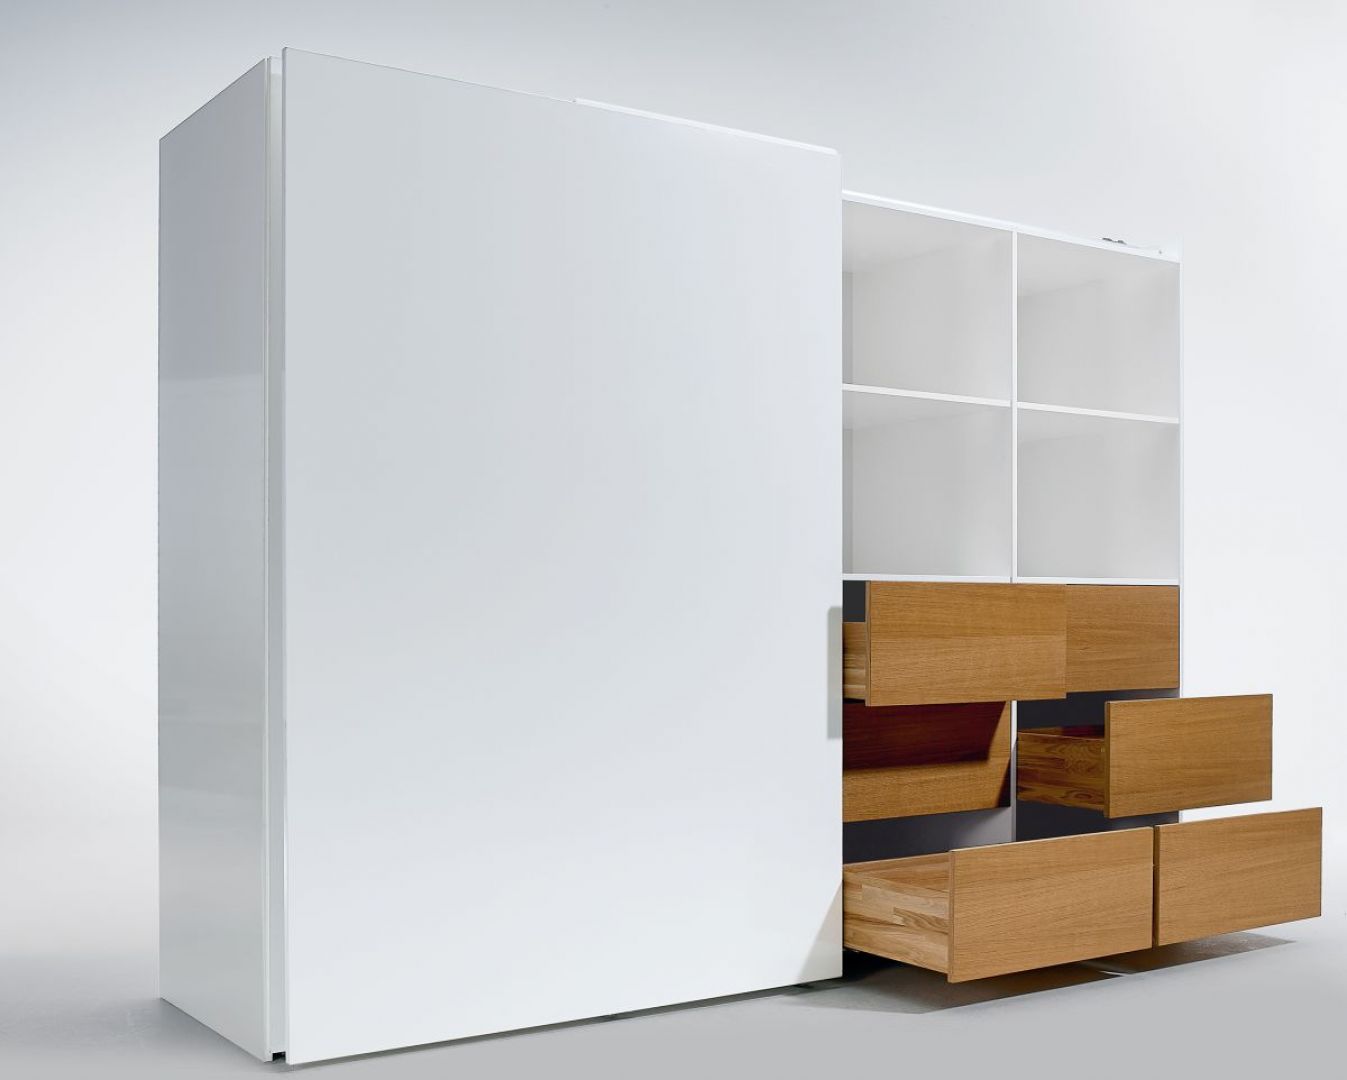 Kolorowe szuflady skrywające się za ascetycznymi, białymi frontami to sposób na urozmaicenie aranżacji wnętrza. Fot. Hettich